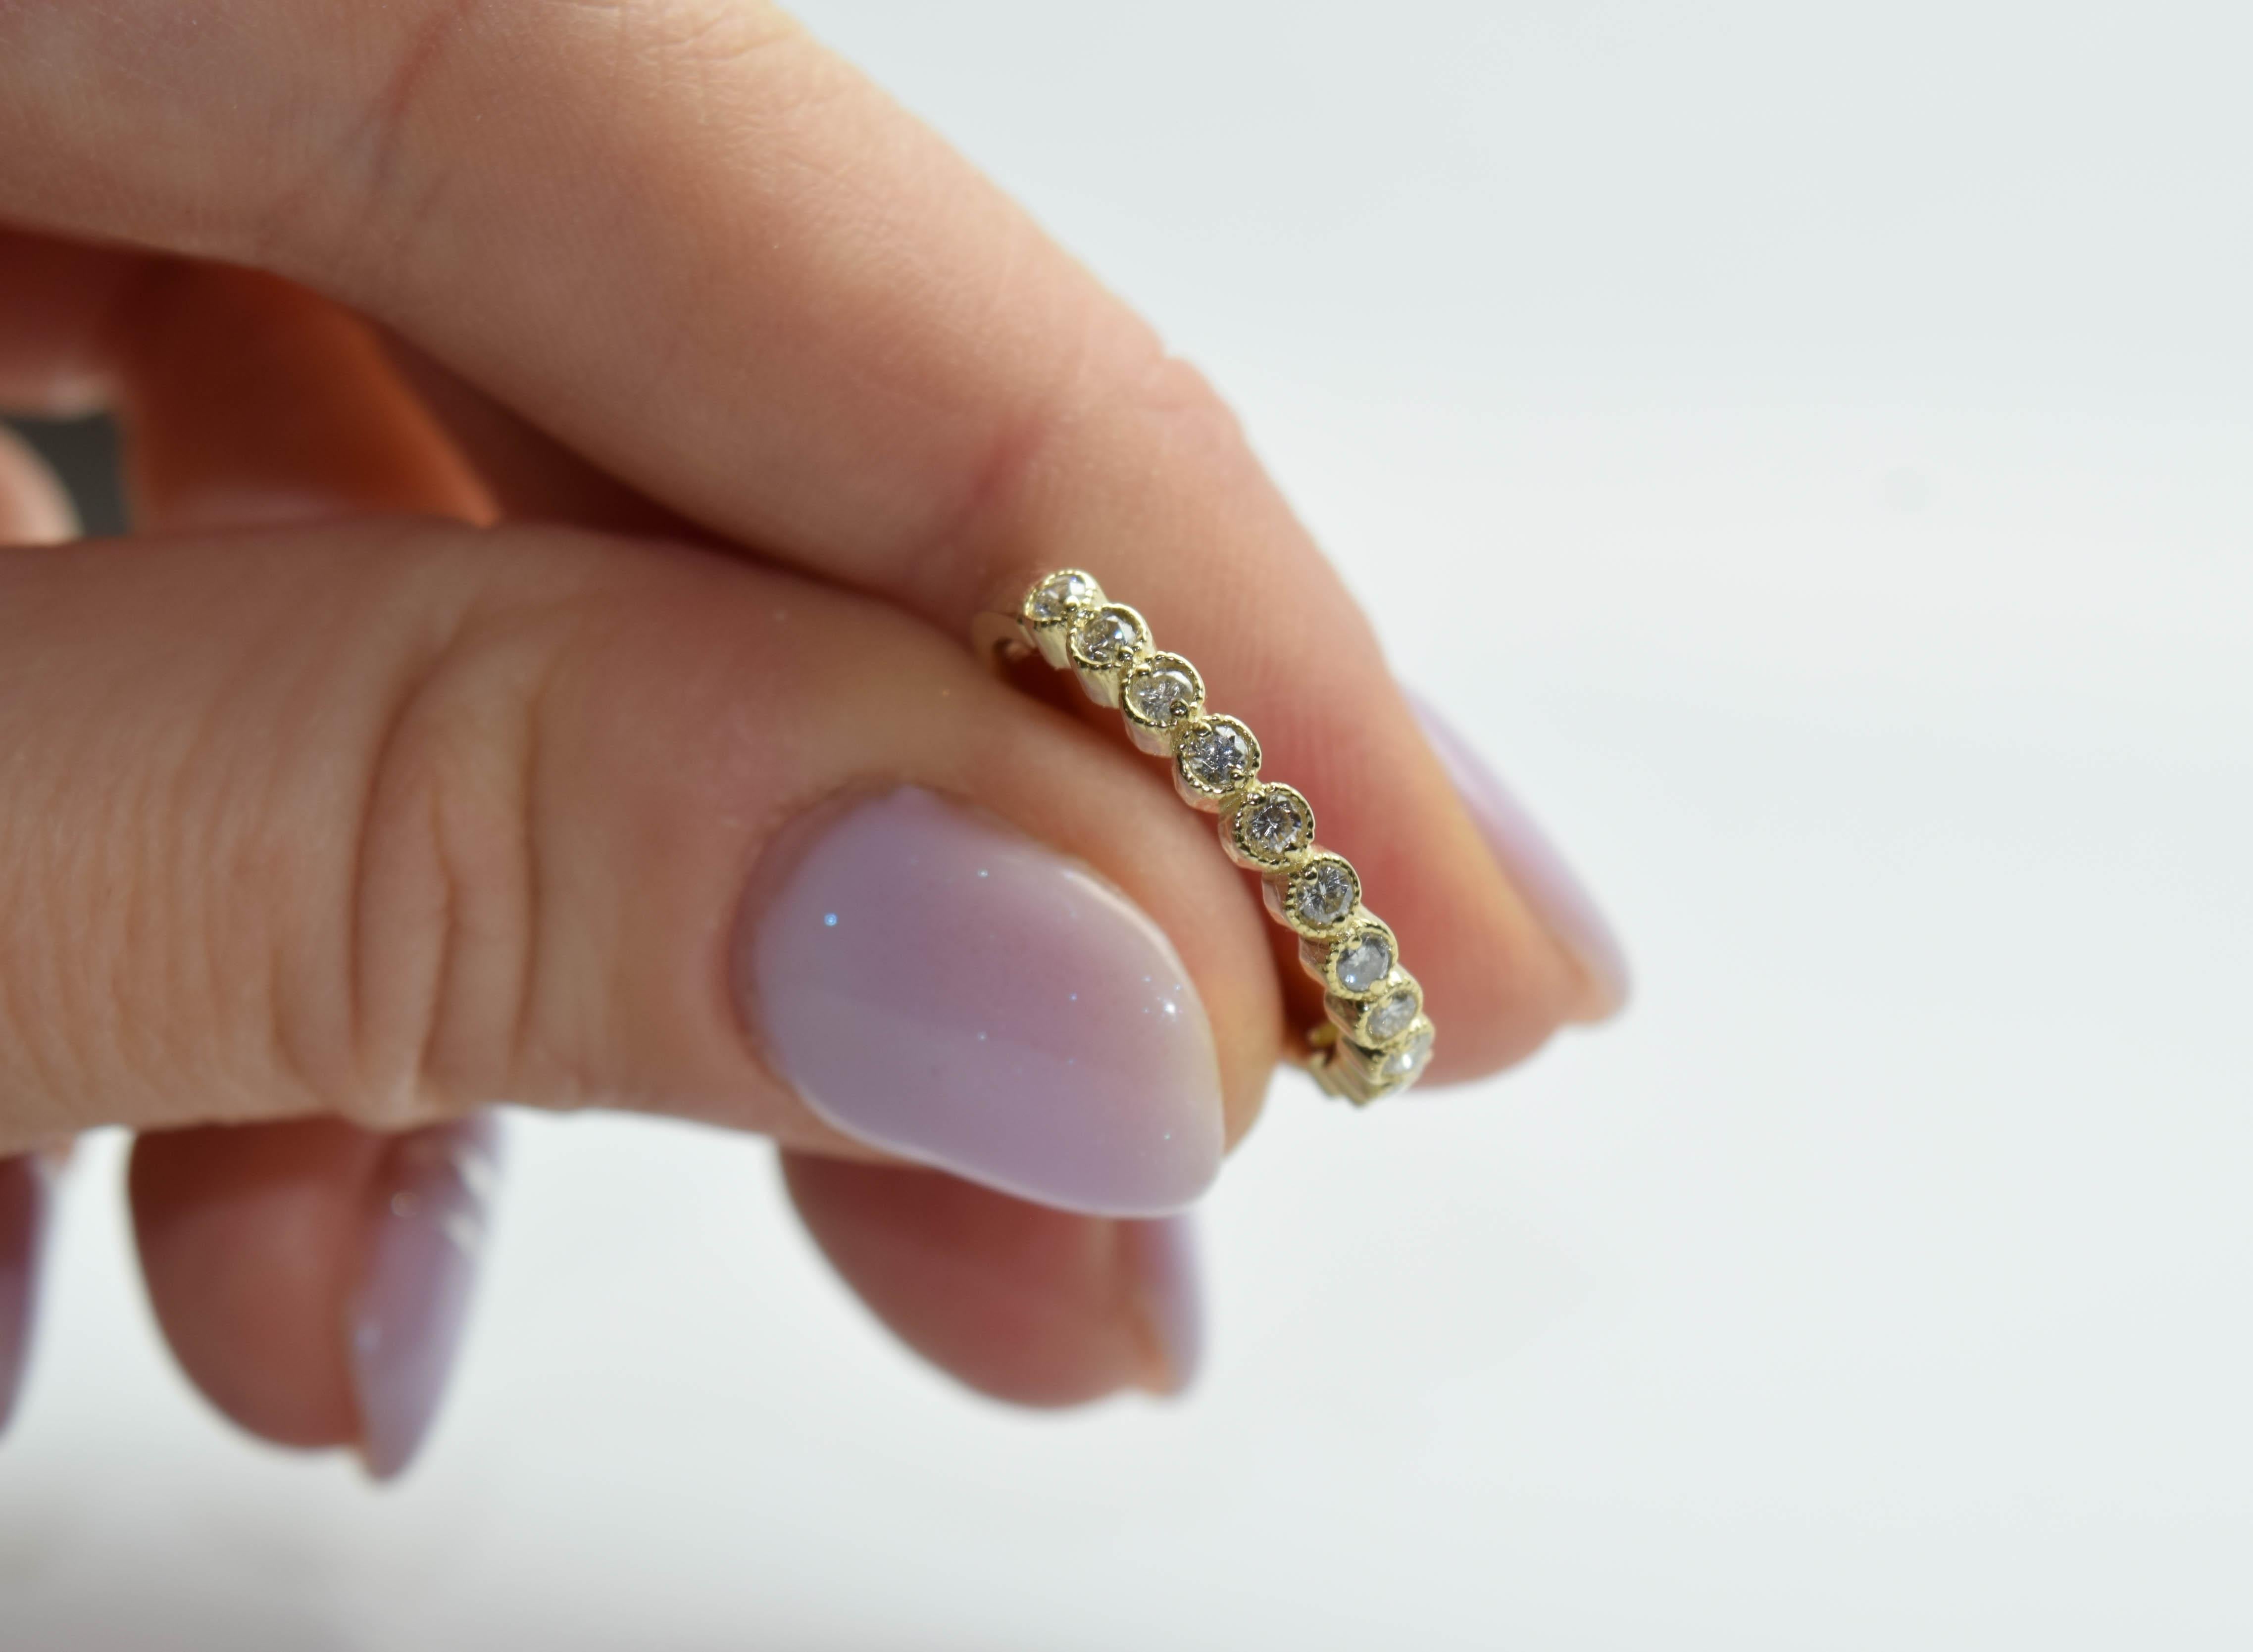 Magnifique bague simple en or jaune 14KT composée de 12 diamants, finie à la main avec de minuscules boules de milgrain autour de chaque chaton, ce qui donne à la bague une touche et un aspect vintage.

Type de métal : 14KT
Naturel Diamant(s)